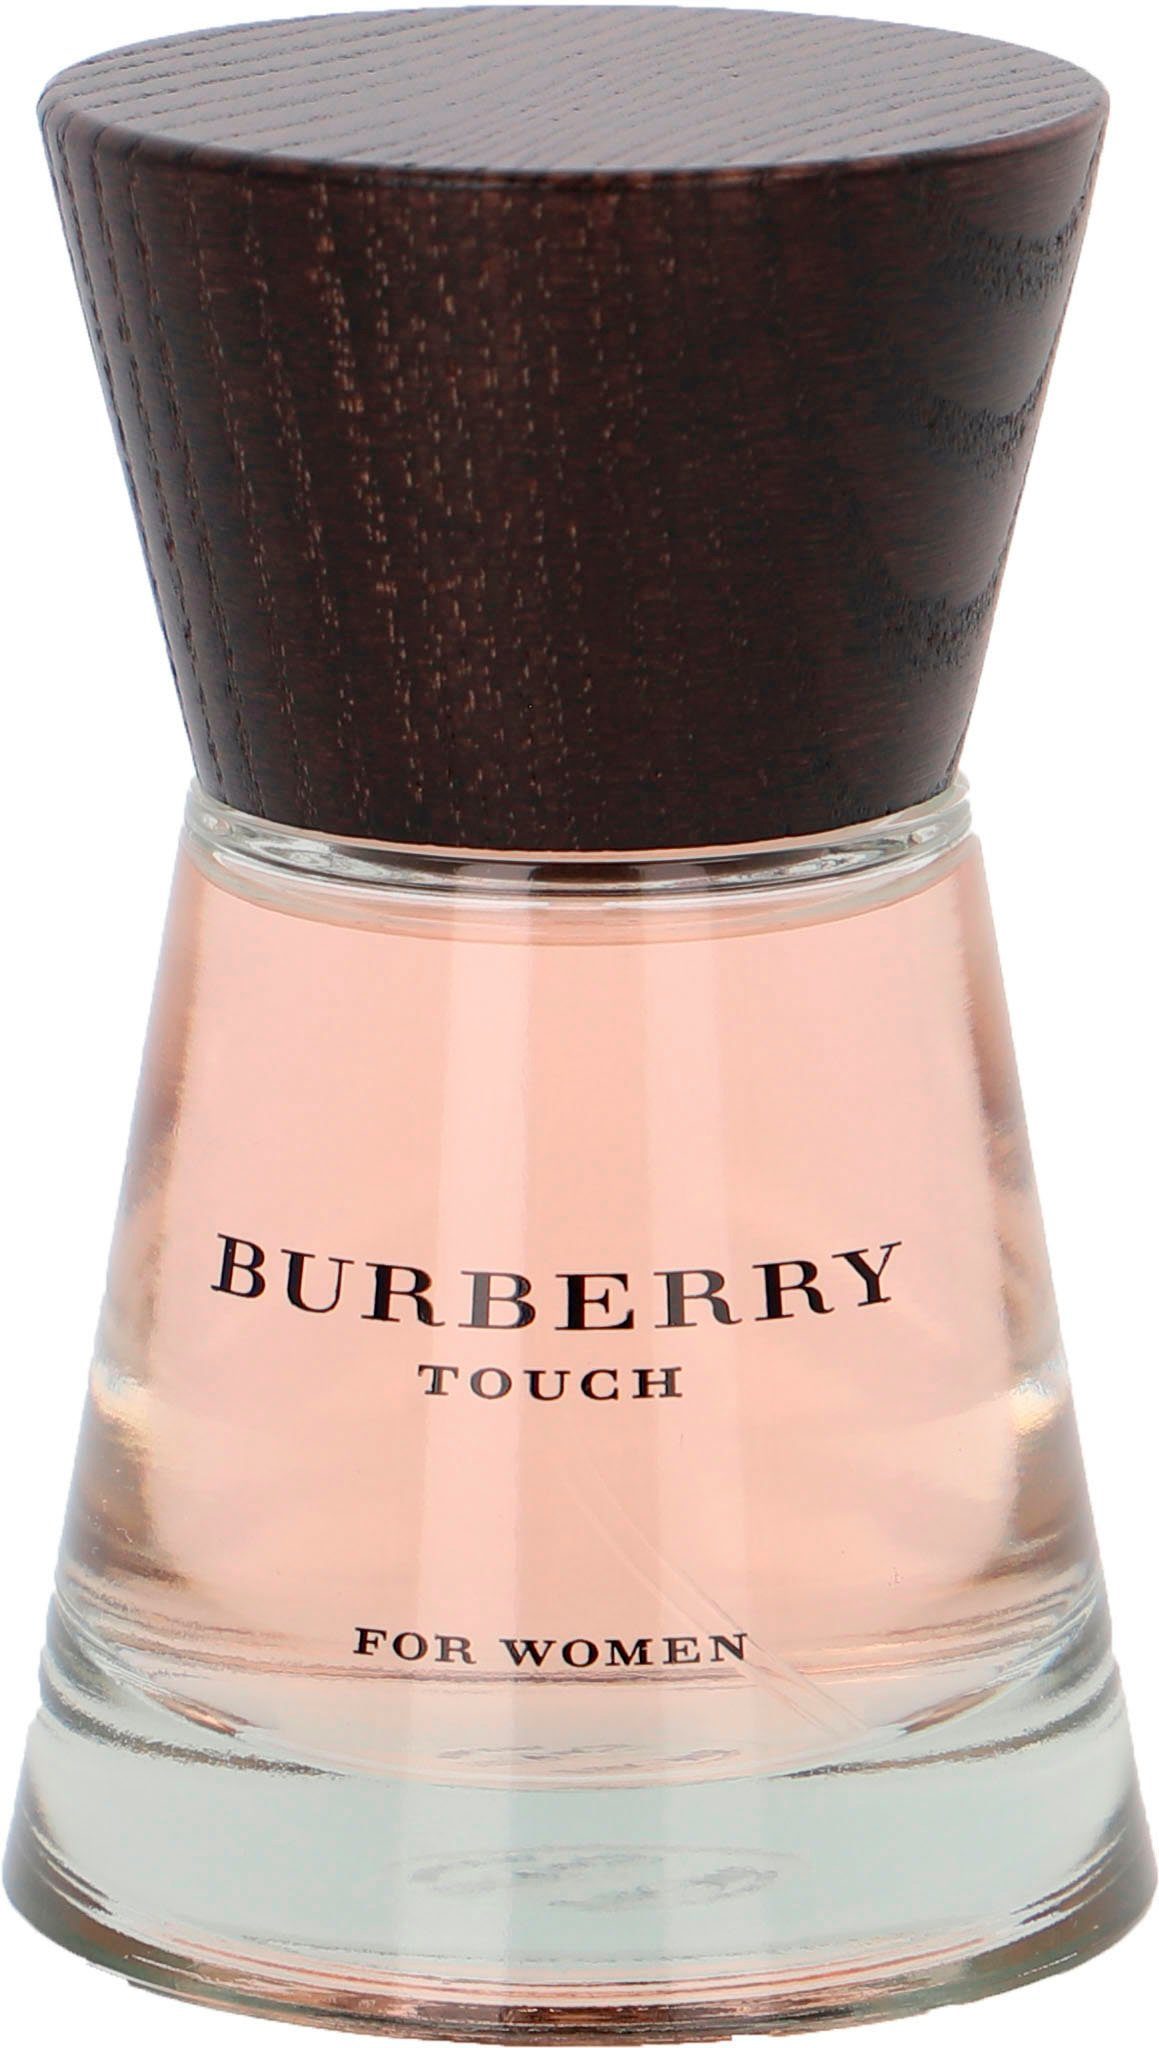 Parfum Touch BURBERRY for Women de Eau